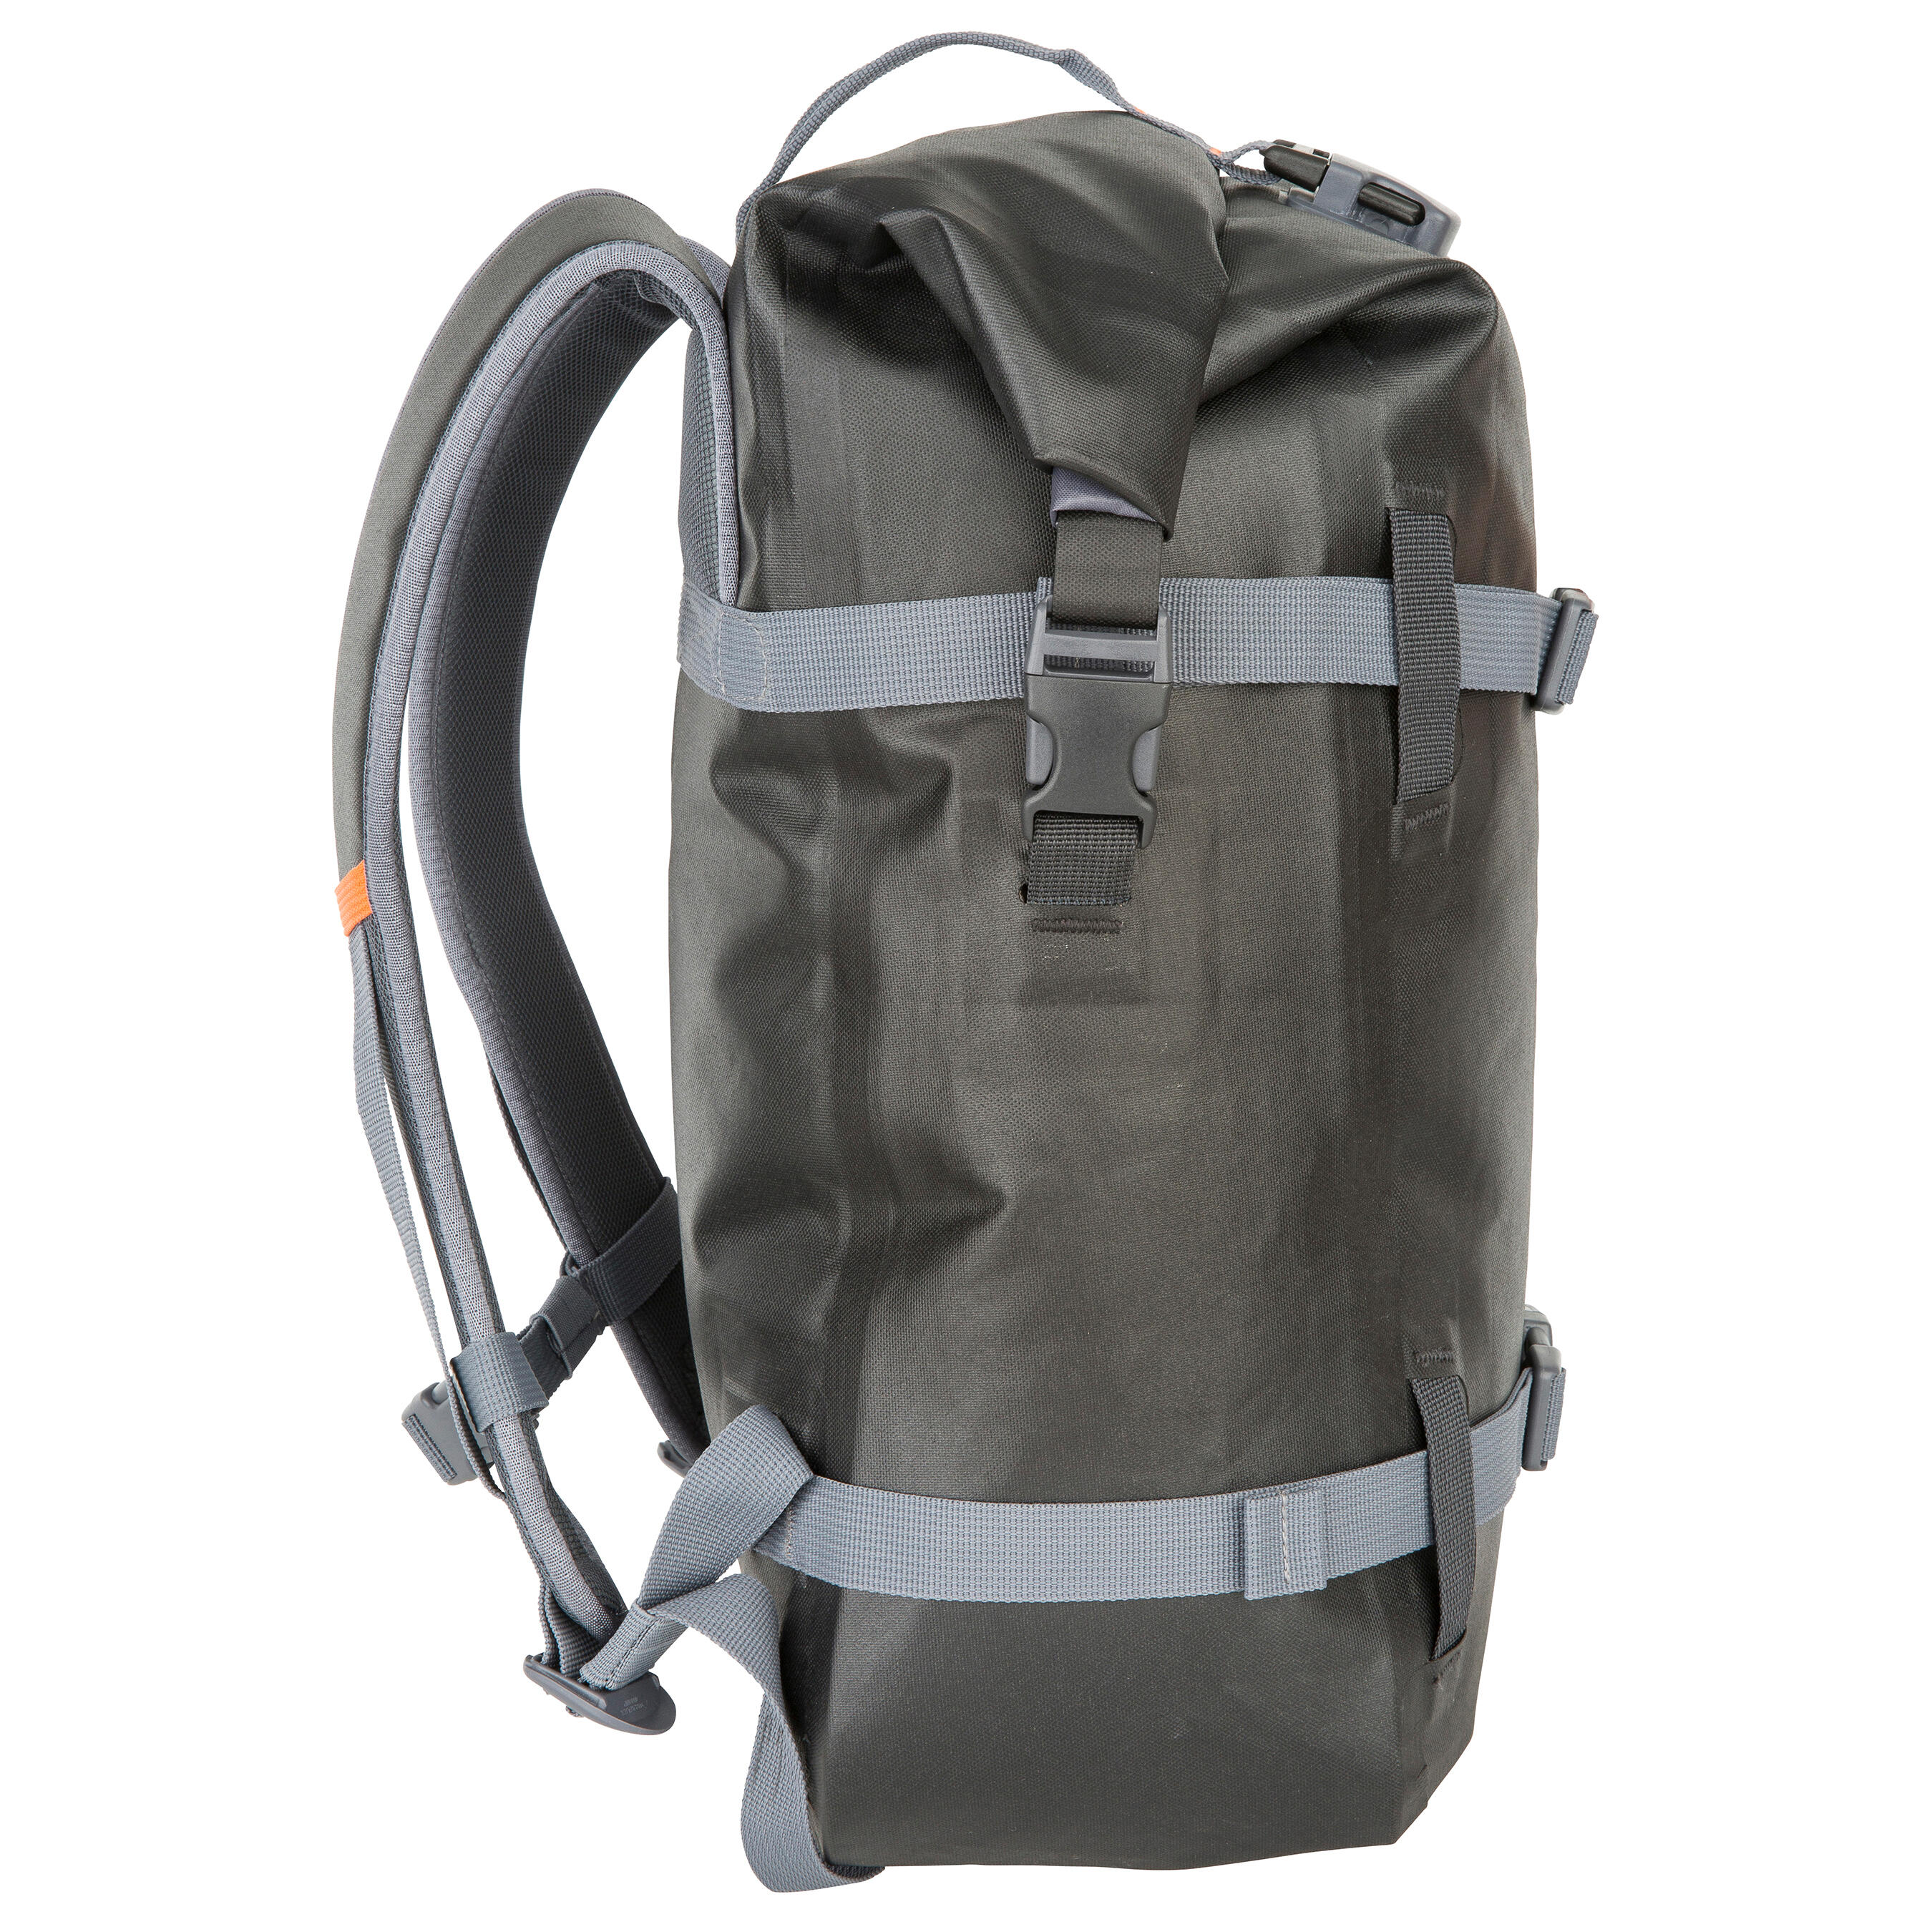 Waterproof Backpack 20L - Black - graphite grey - Itiwit - Decathlon